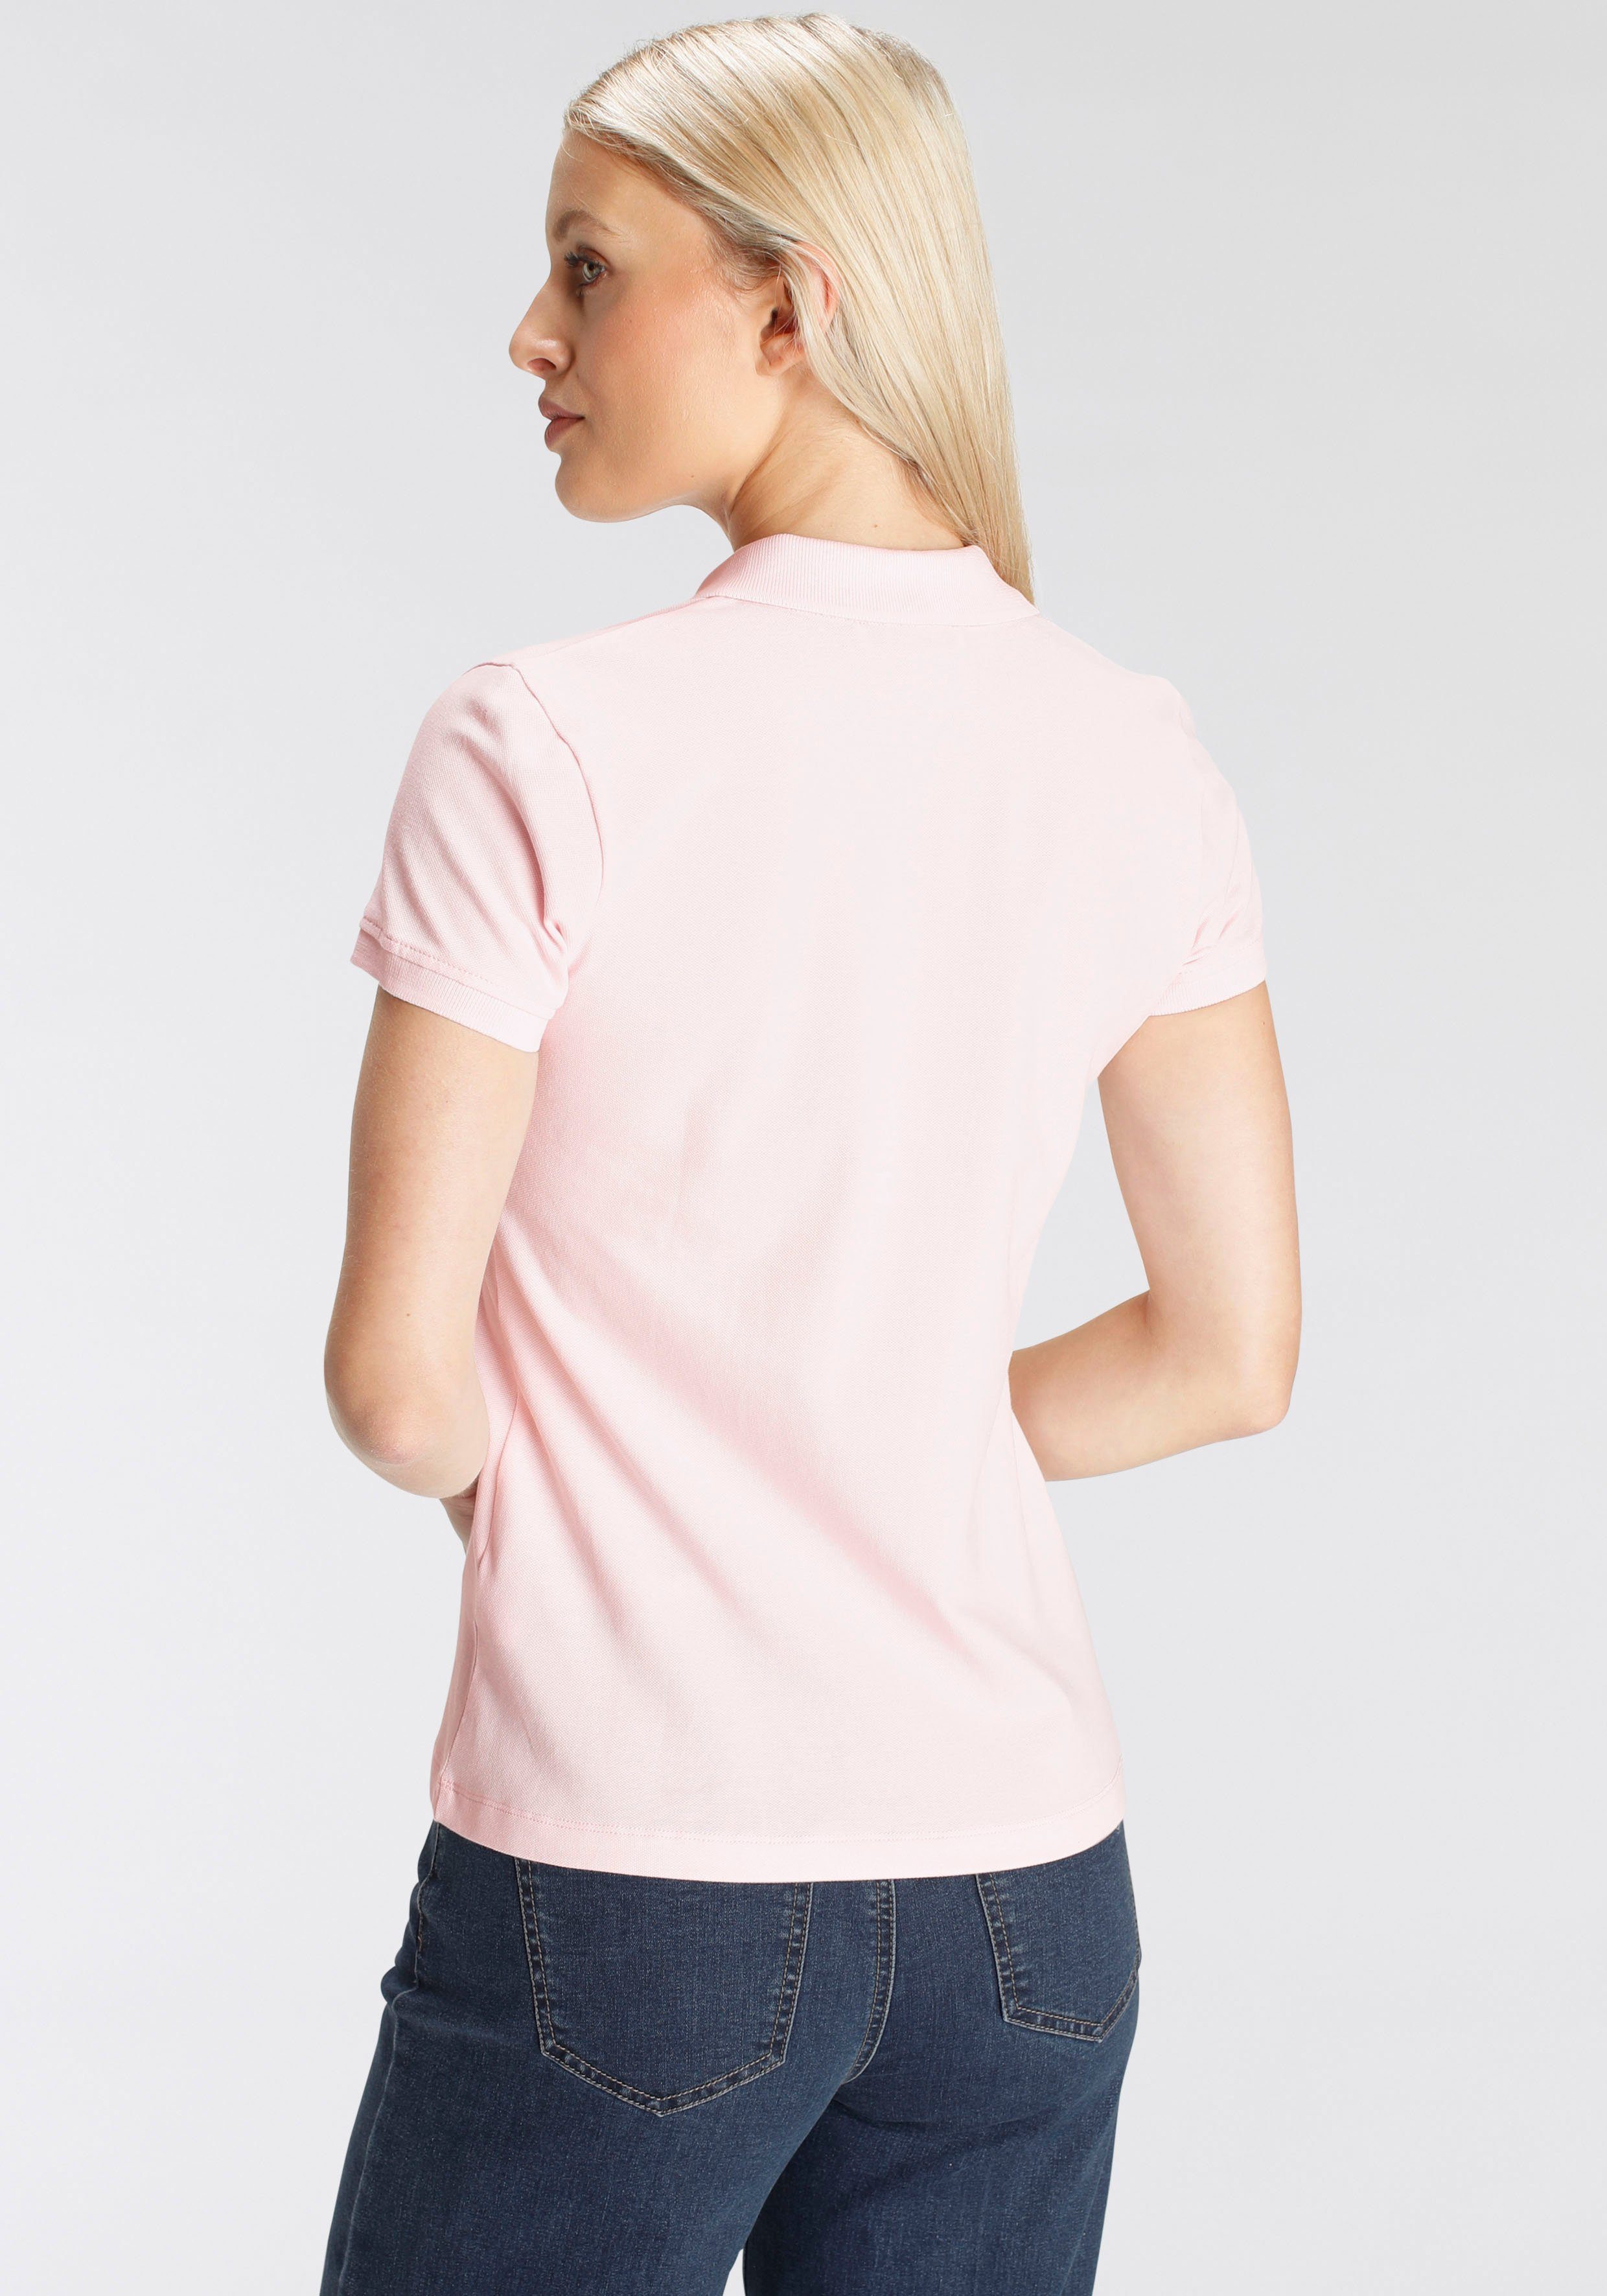 MARKE! verschiedenen - Form in Farben Poloshirt DELMAO rosa in NEUE klassischer